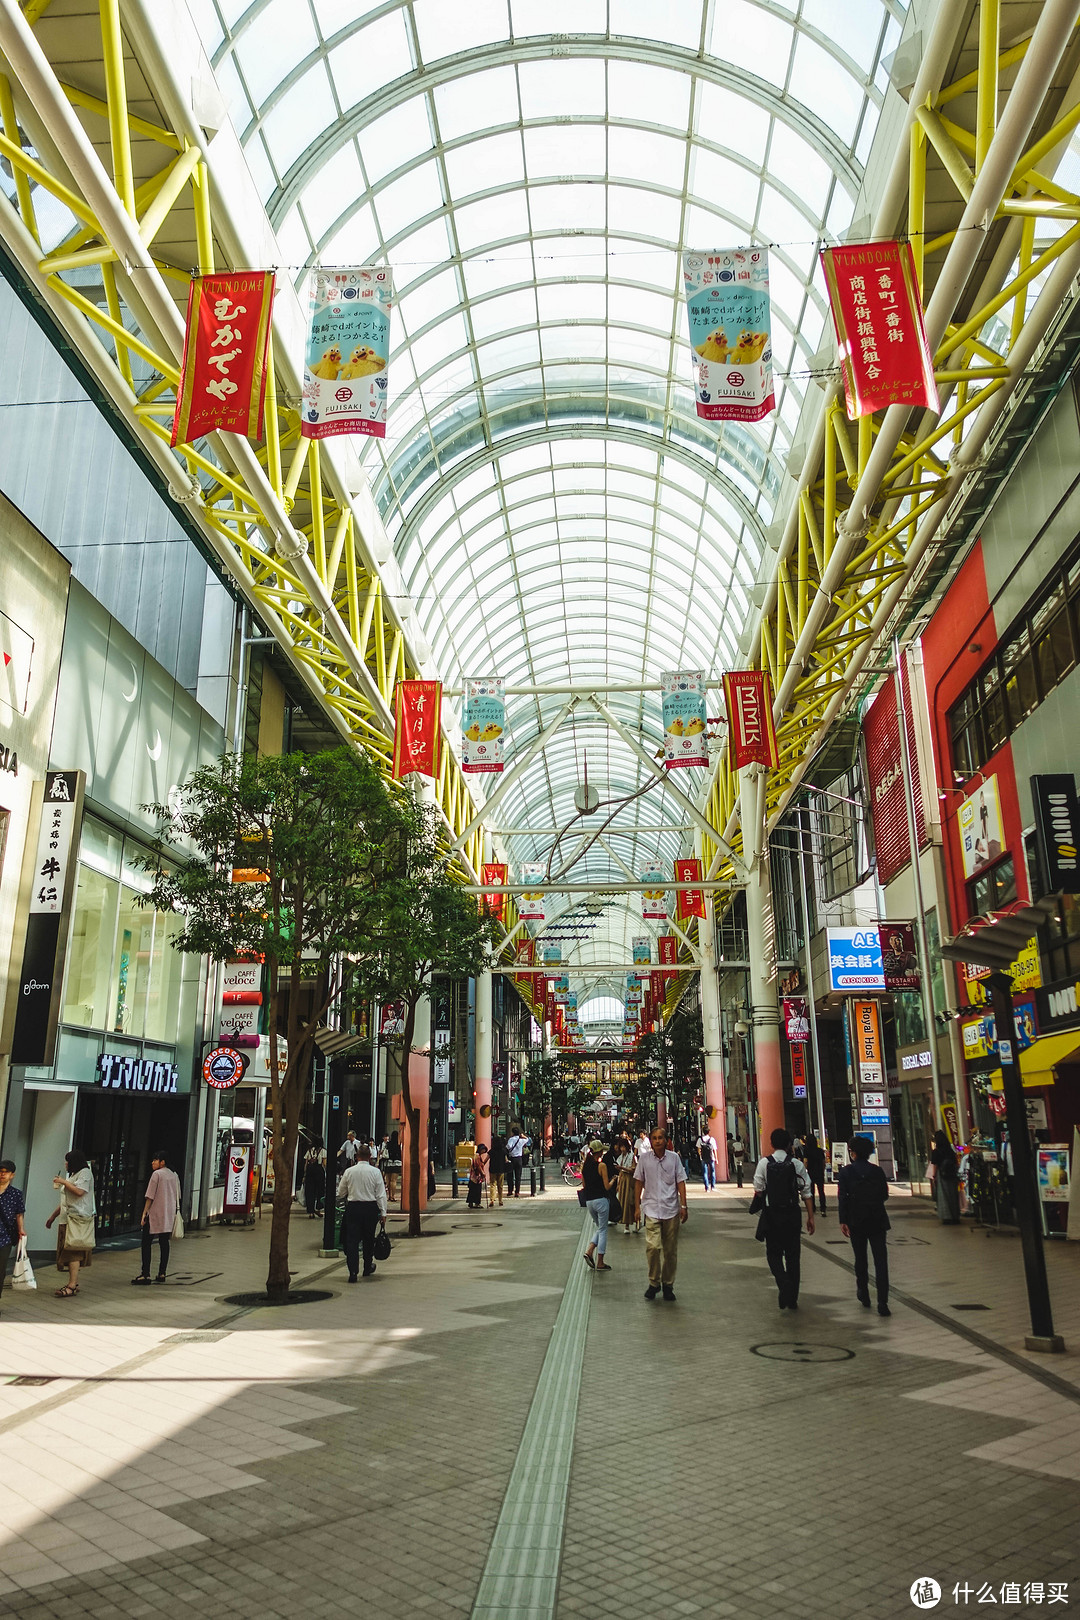 仙台最热闹的商店街就是一番街了吧，日本的商店街都差不多，有顶棚两边都是各式各样的商店